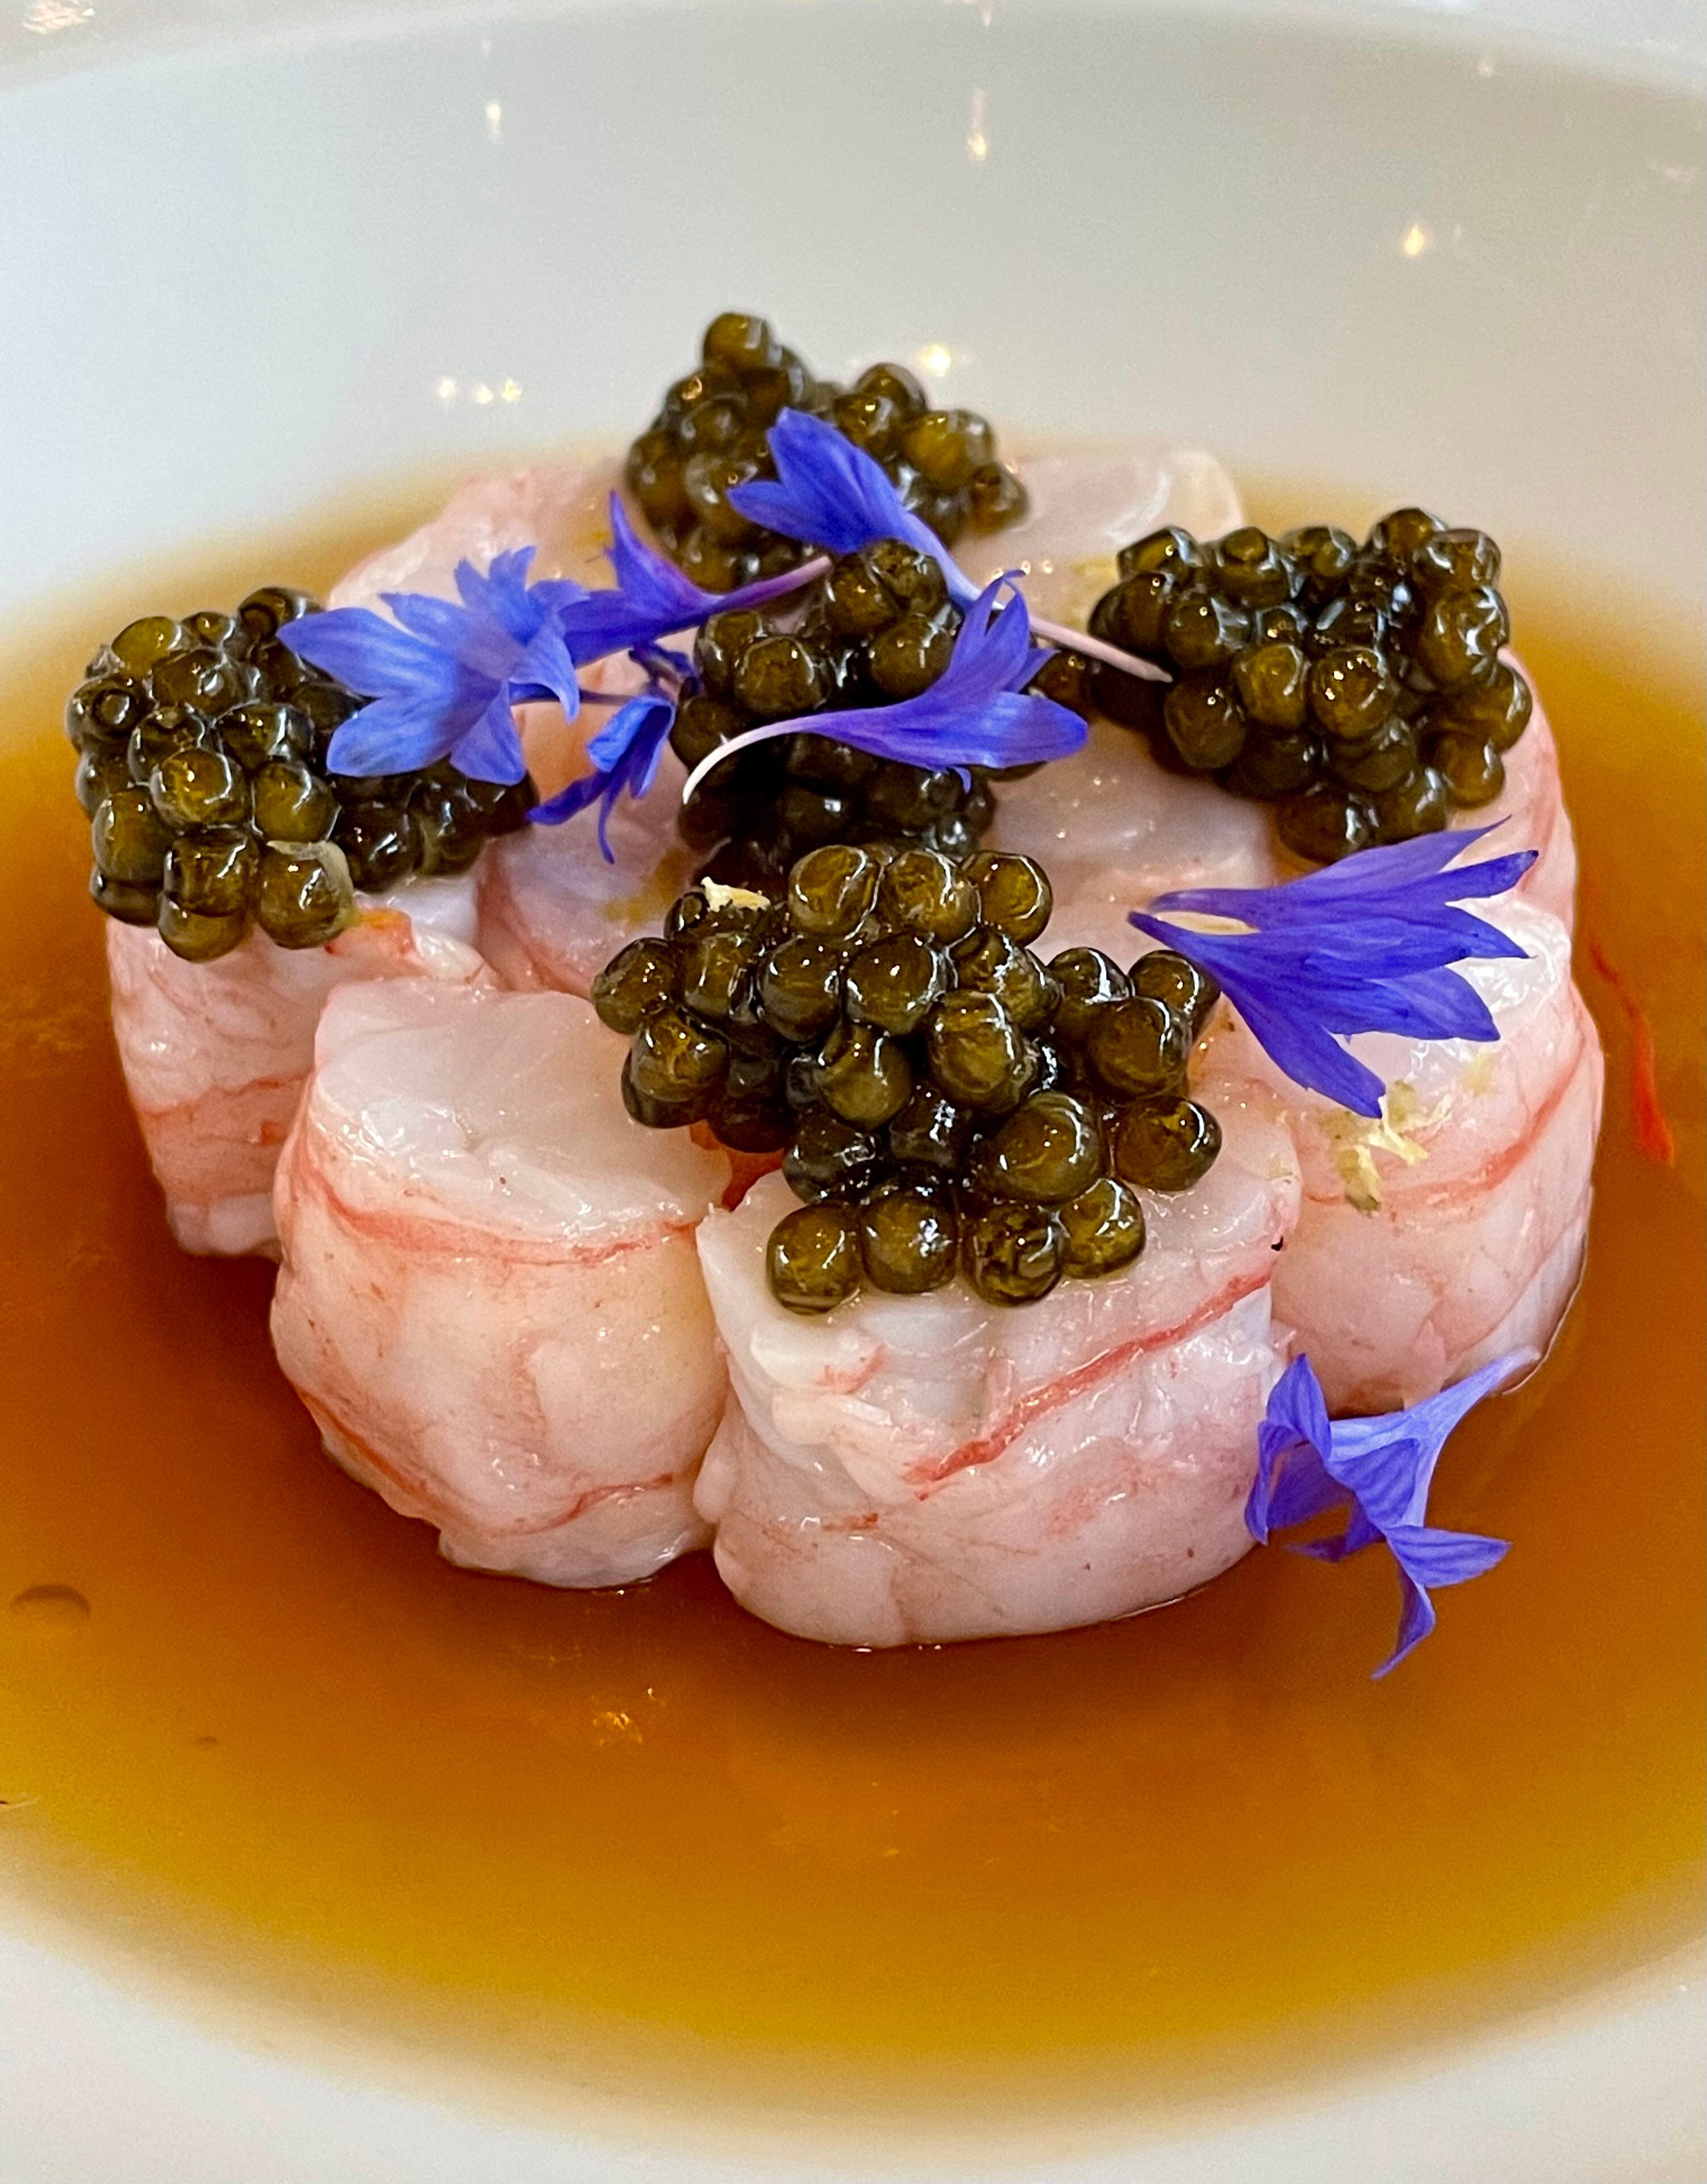 Plato de Alain Ducasse para la cena del aniversario: langostinos, gelatina de pescado de roca y caviar.